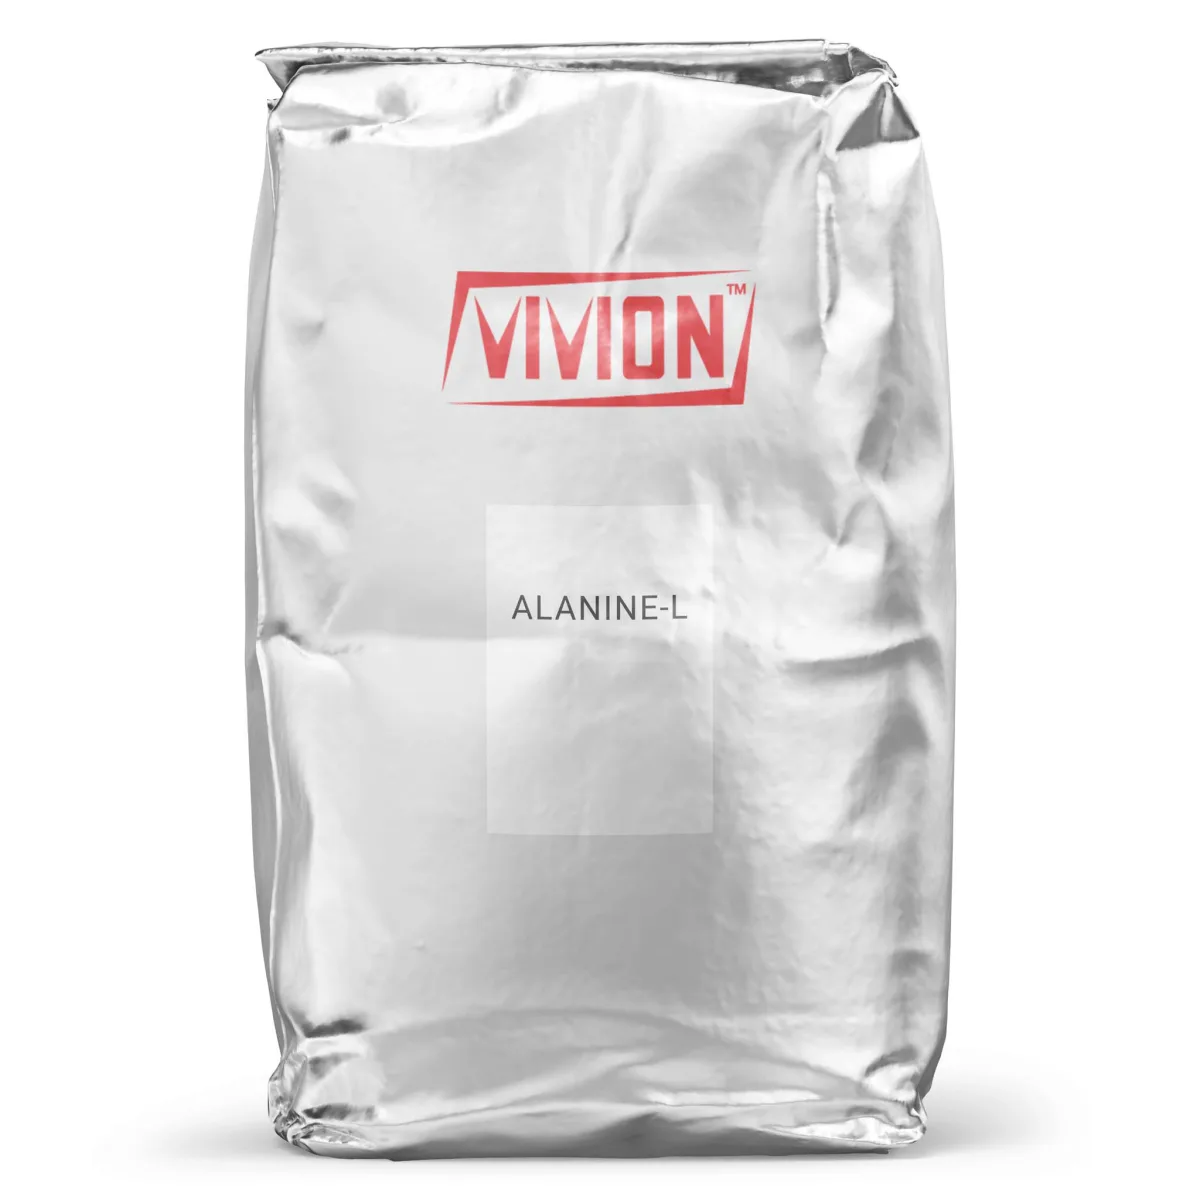 Bag of Vivion's wholesale Alanine-L.